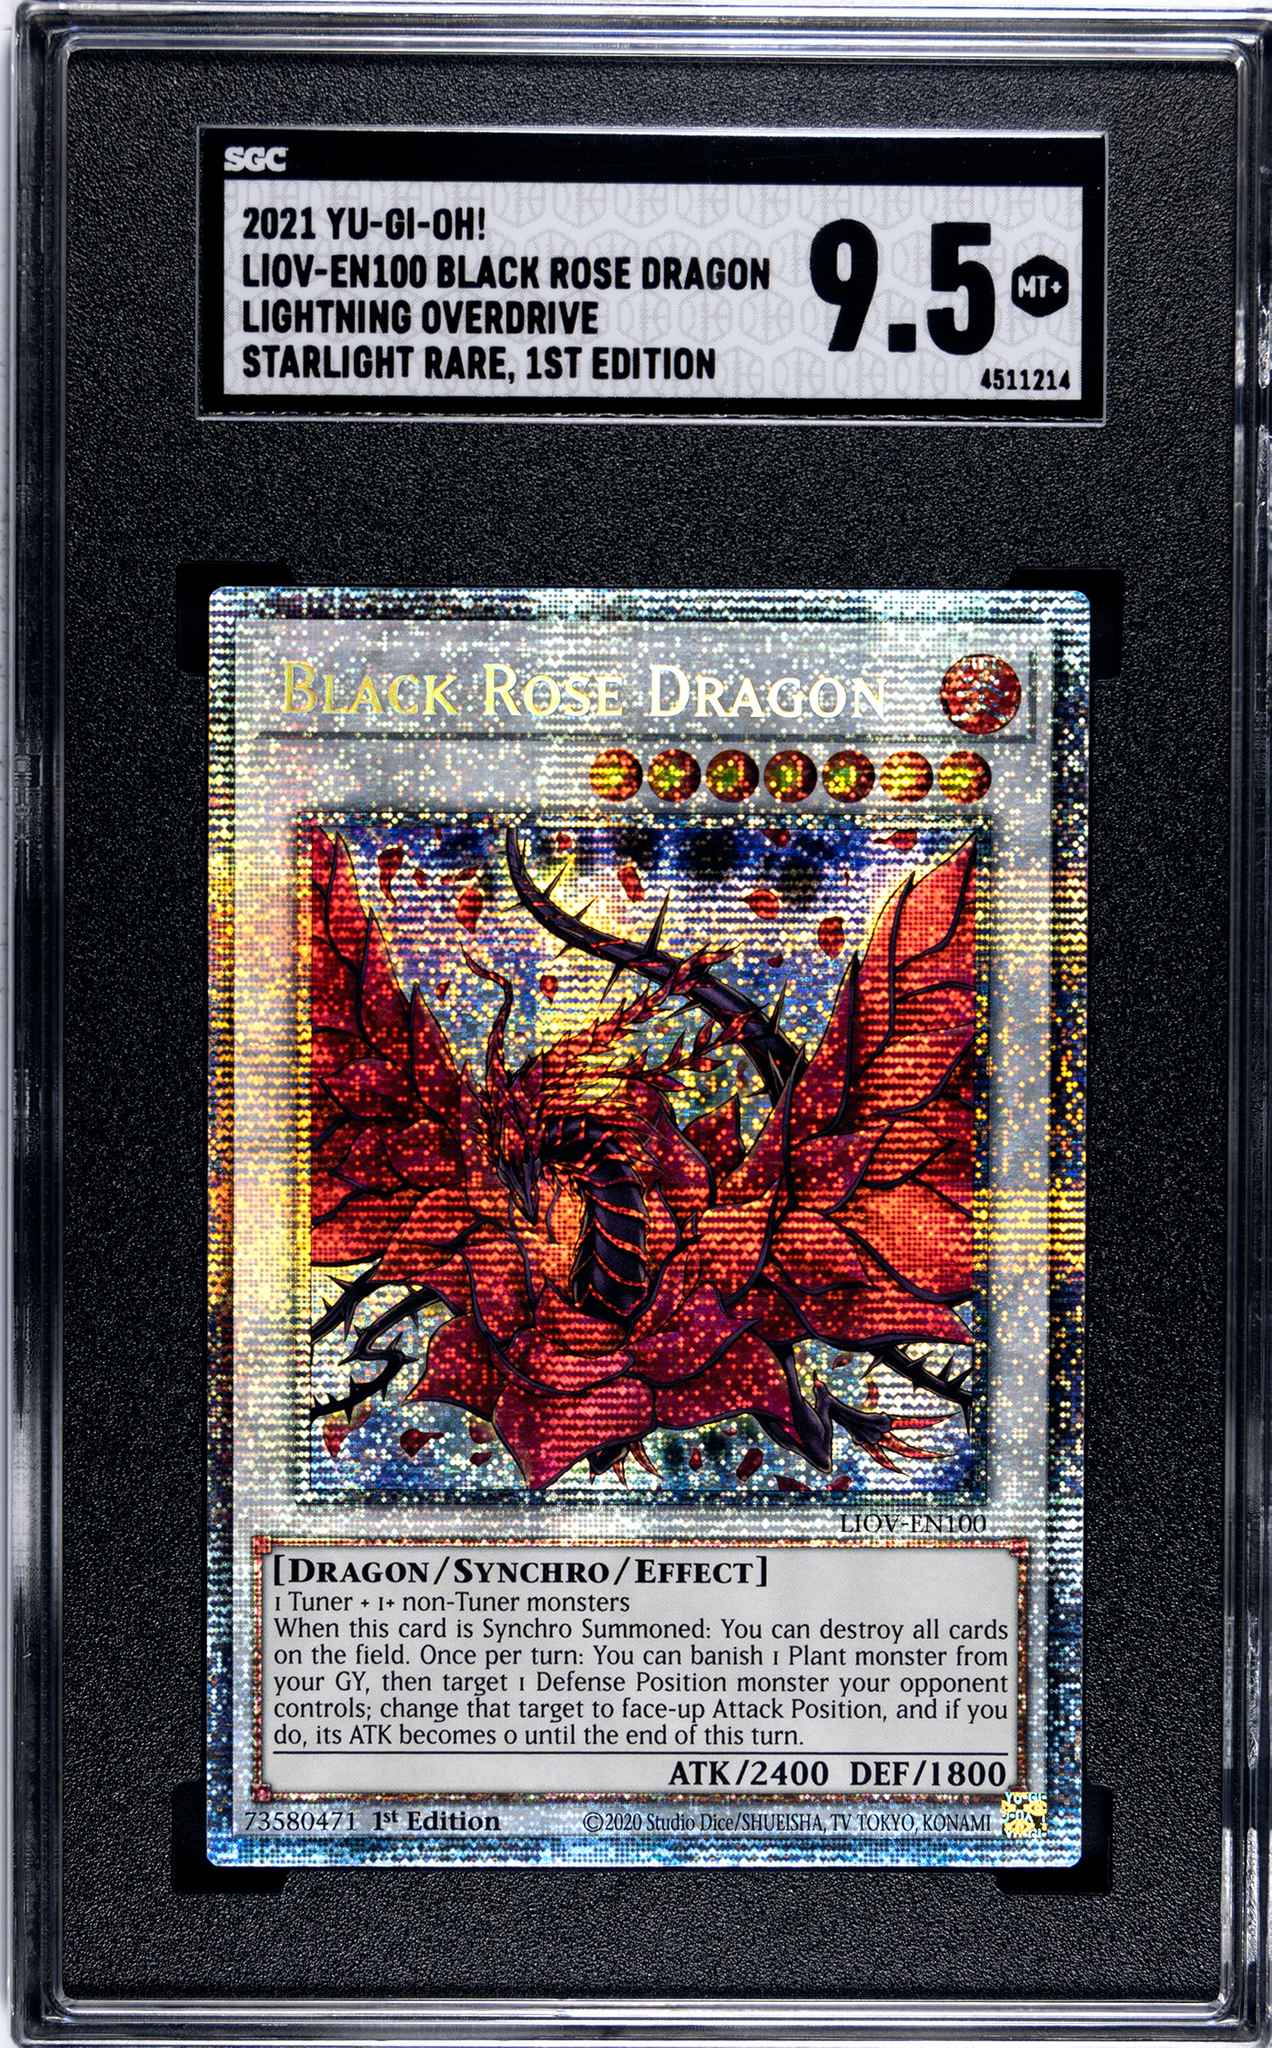 Black Rose Dragon LIOV EN100 Starlight Rare 1st Edition Yugioh 